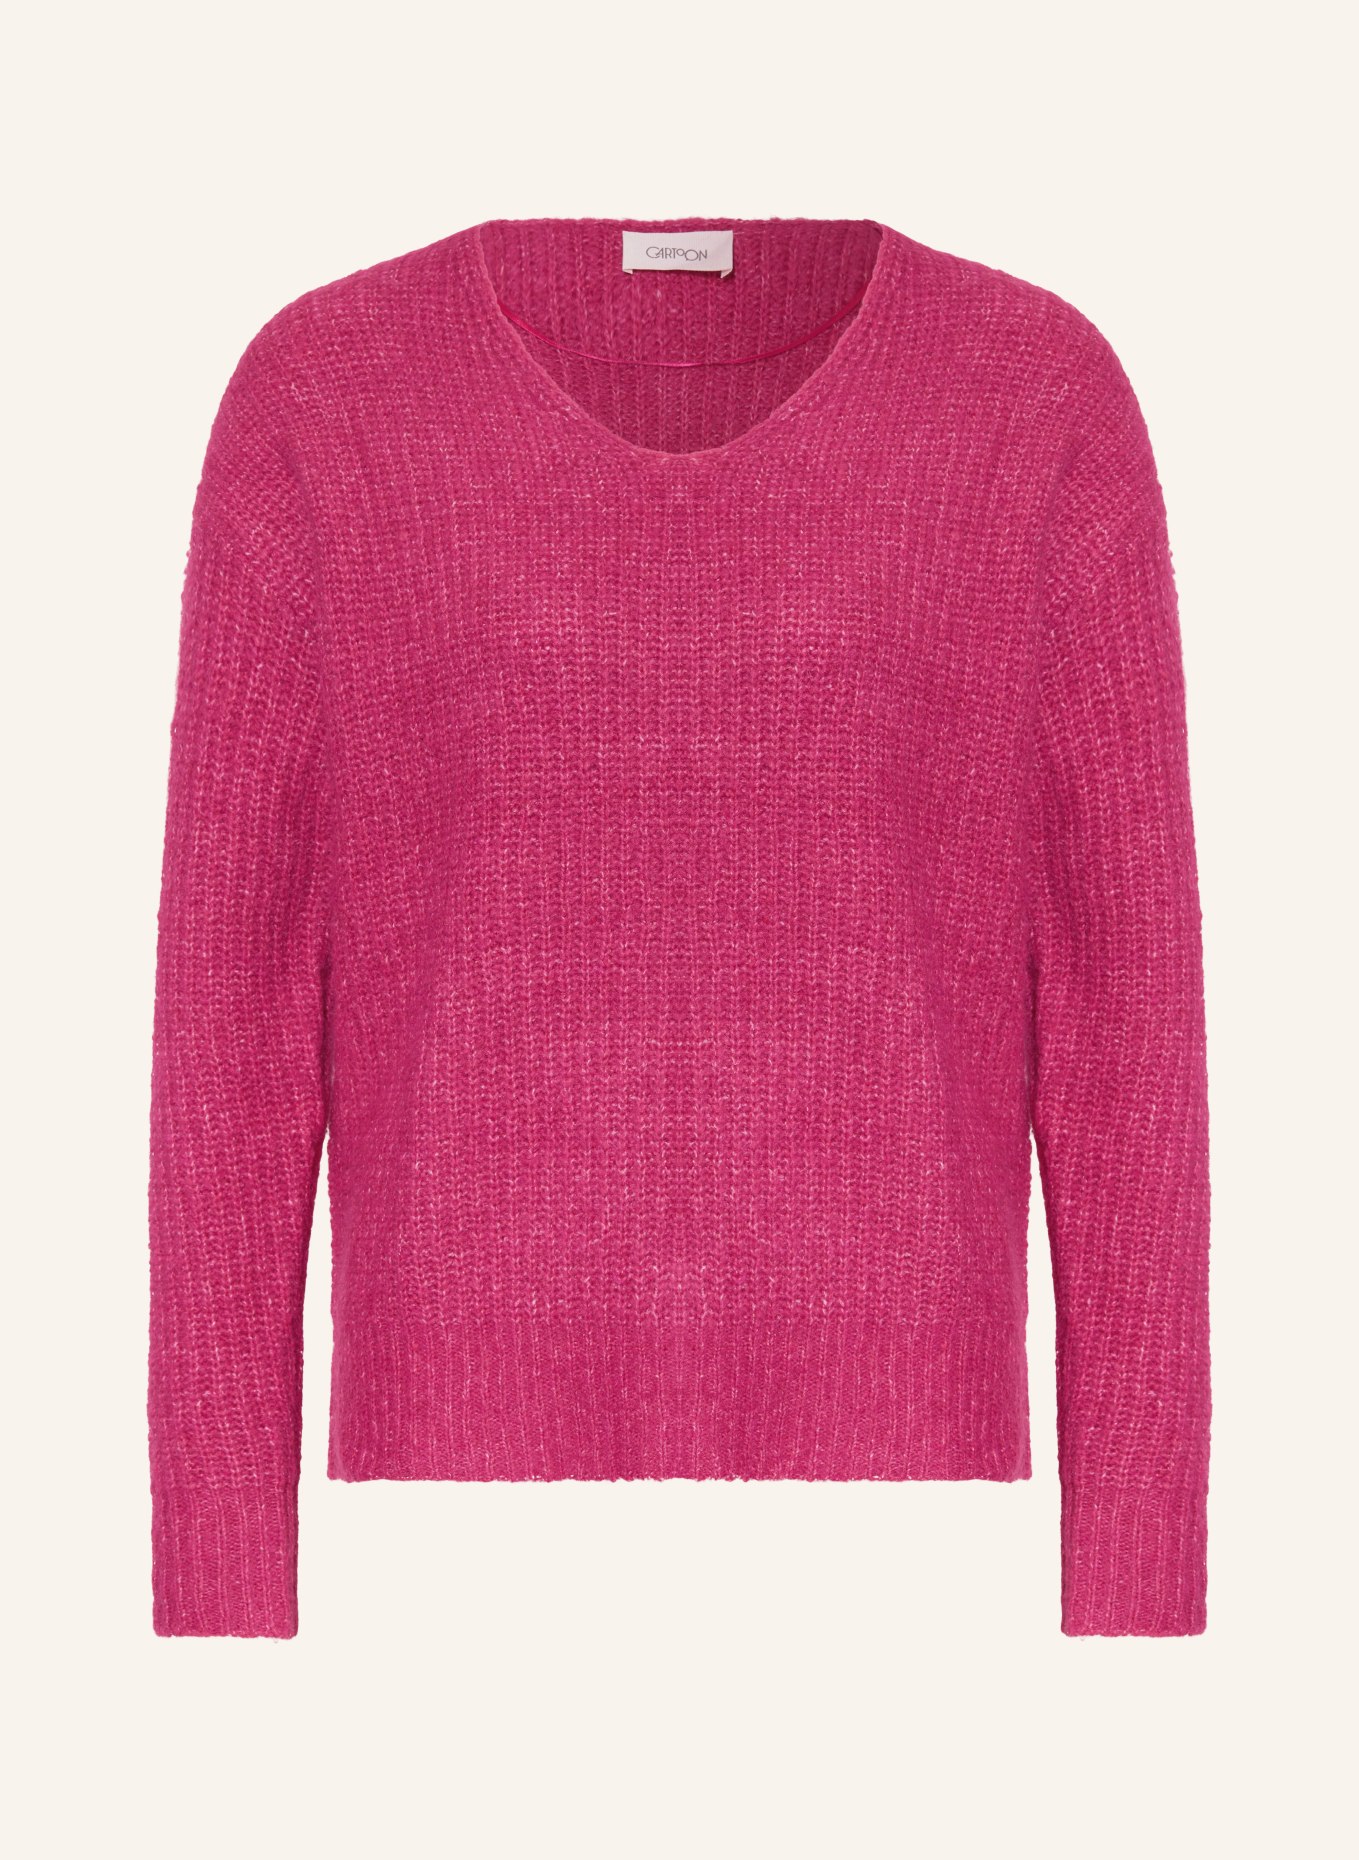 CARTOON Pullover, Farbe: PINK (Bild 1)